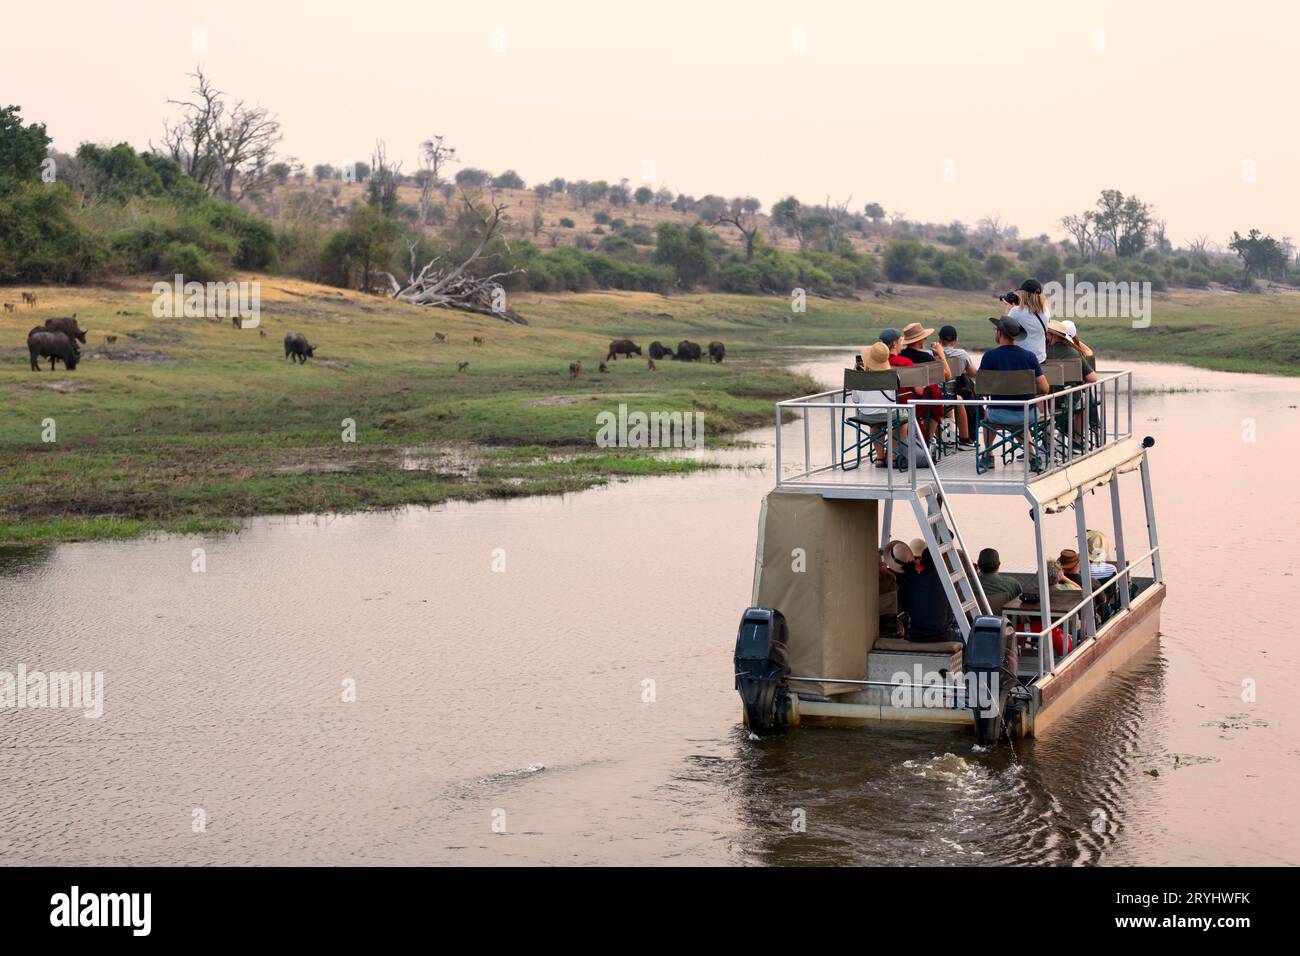 Croisière en bateau dans le parc national de Chobe. Un canal entre le nord du Botswana et la Namibie. Une fermeture à la faune. Banque D'Images